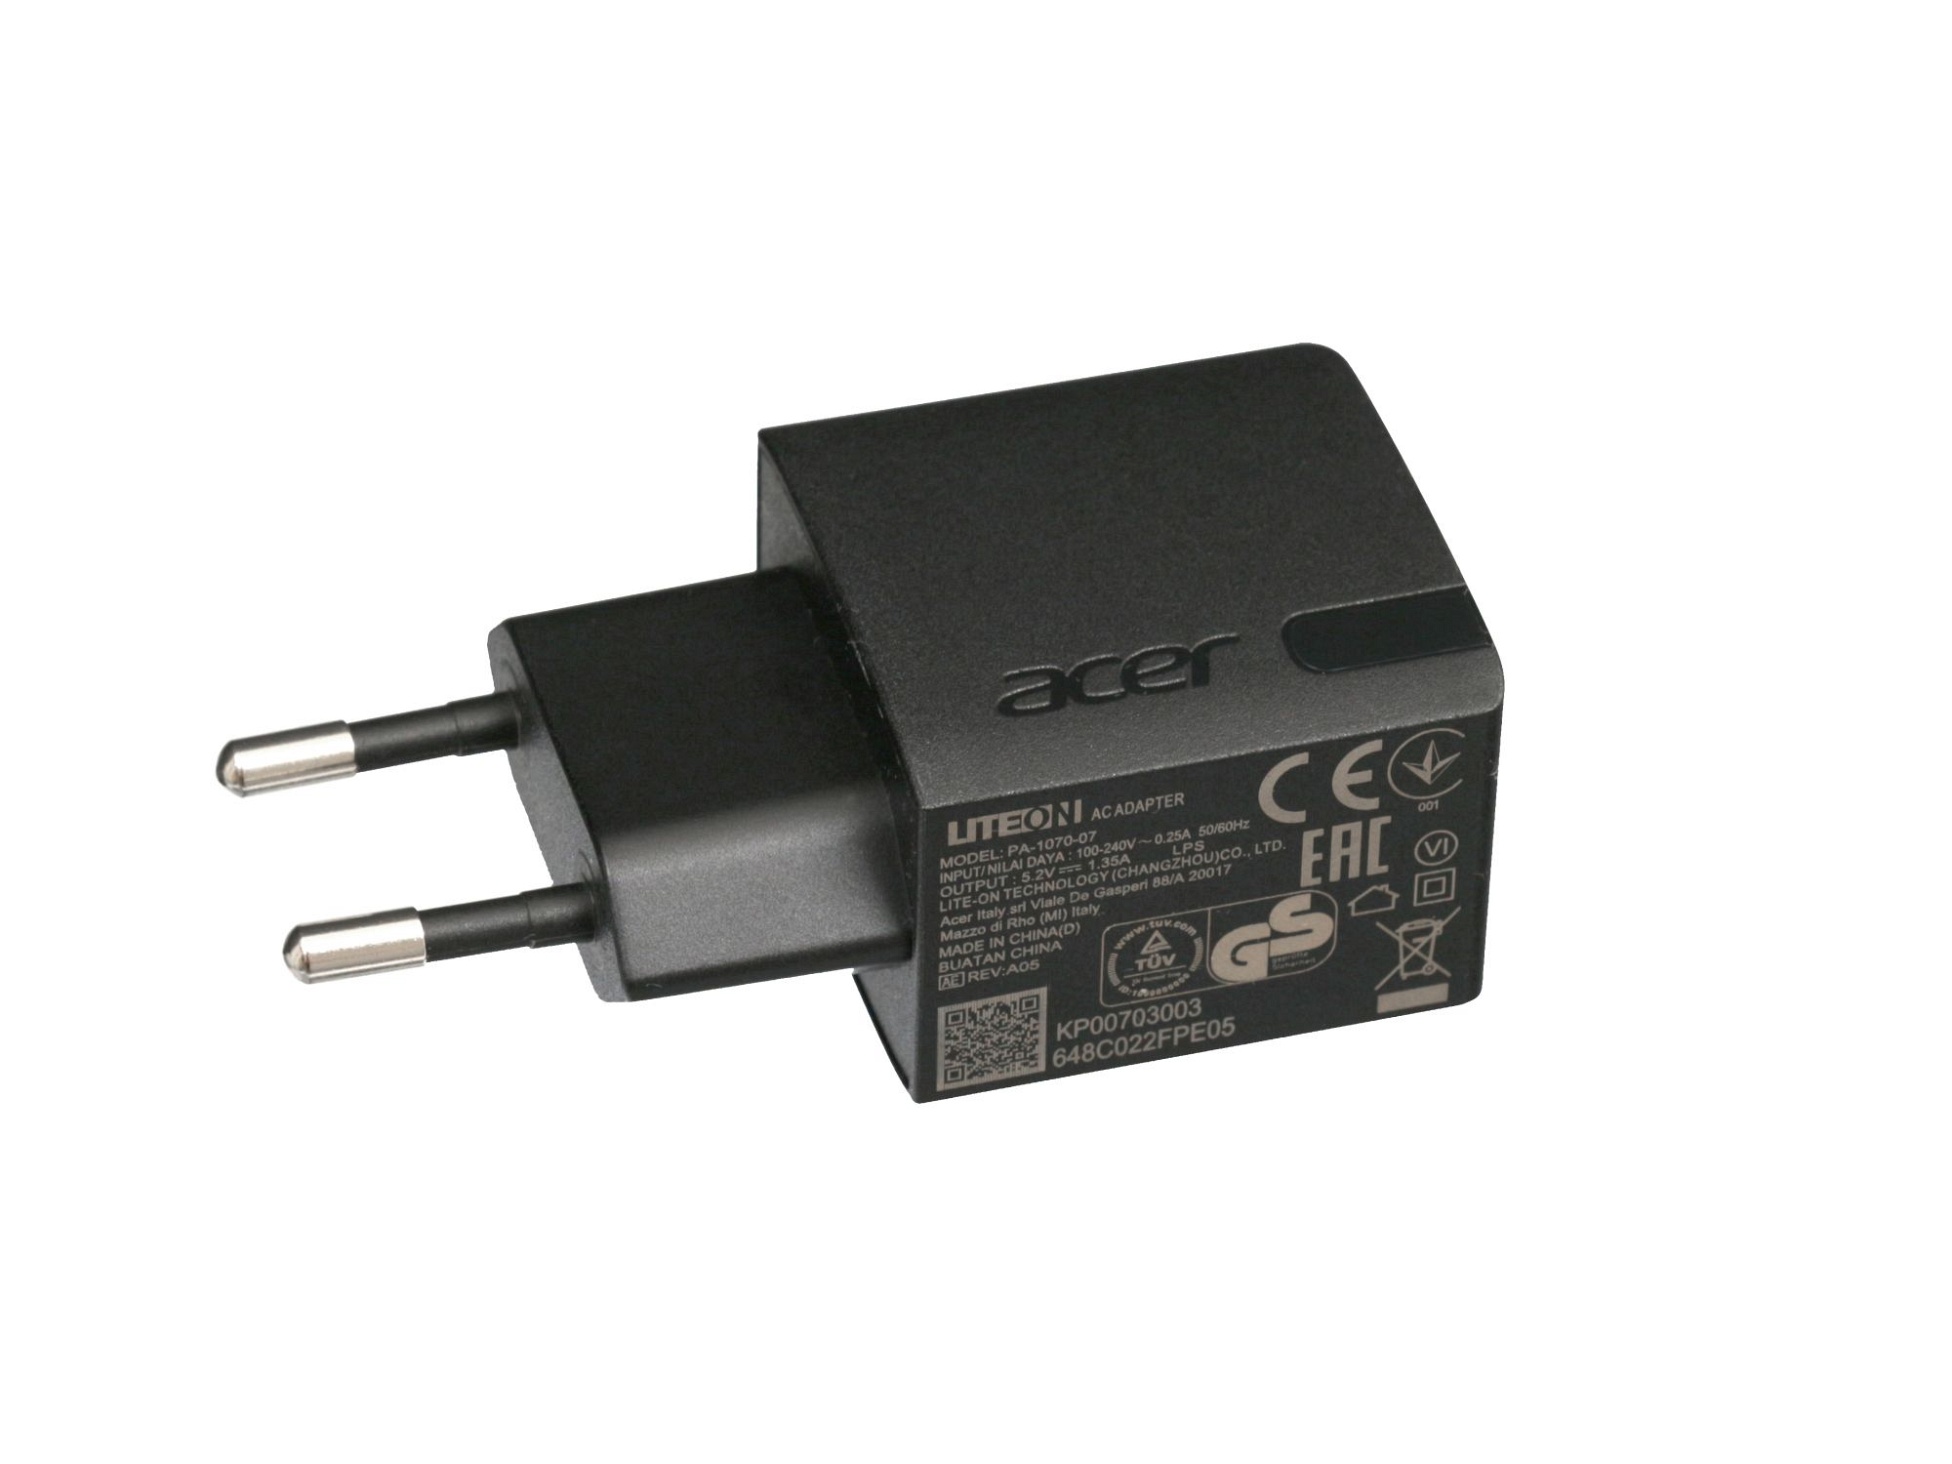 USB Netzteil 7 Watt EU Wallplug für Acer Iconia B1-760HD